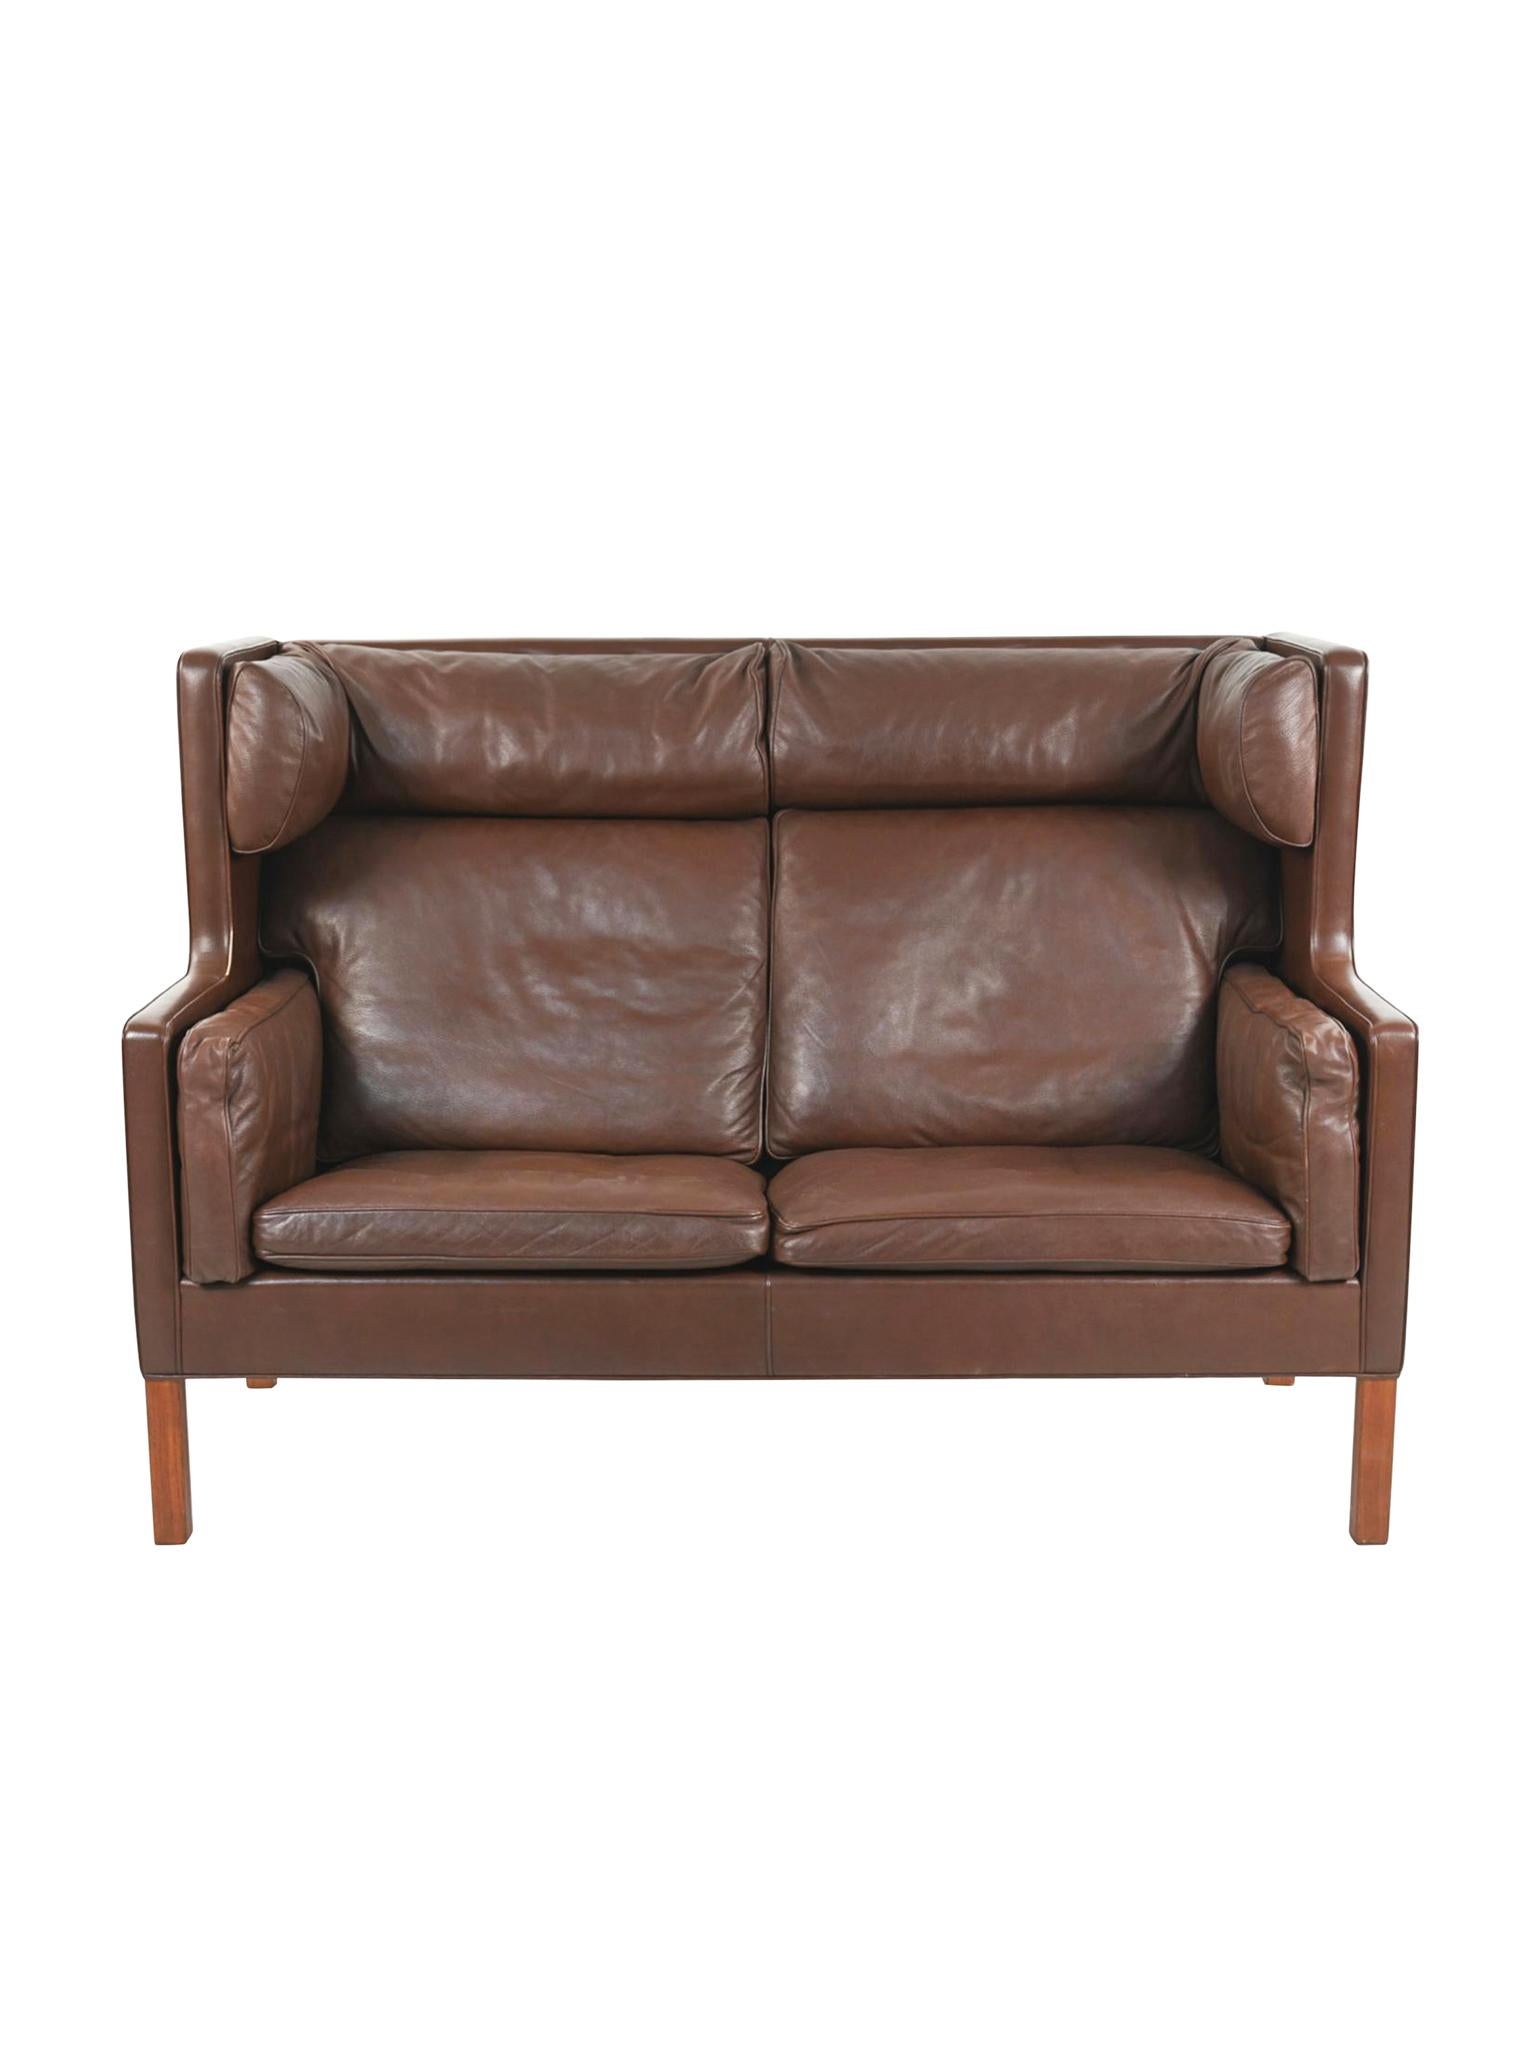 Ce canapé coupé en cuir brun semi-aniline a été conçu par Børge Mogensen pour Fredericia dans les années 1960. Sur le plan structurel, le canapé est doté d'un dossier haut et rembourré, rappelant un fauteuil à oreilles, qui invite à une position